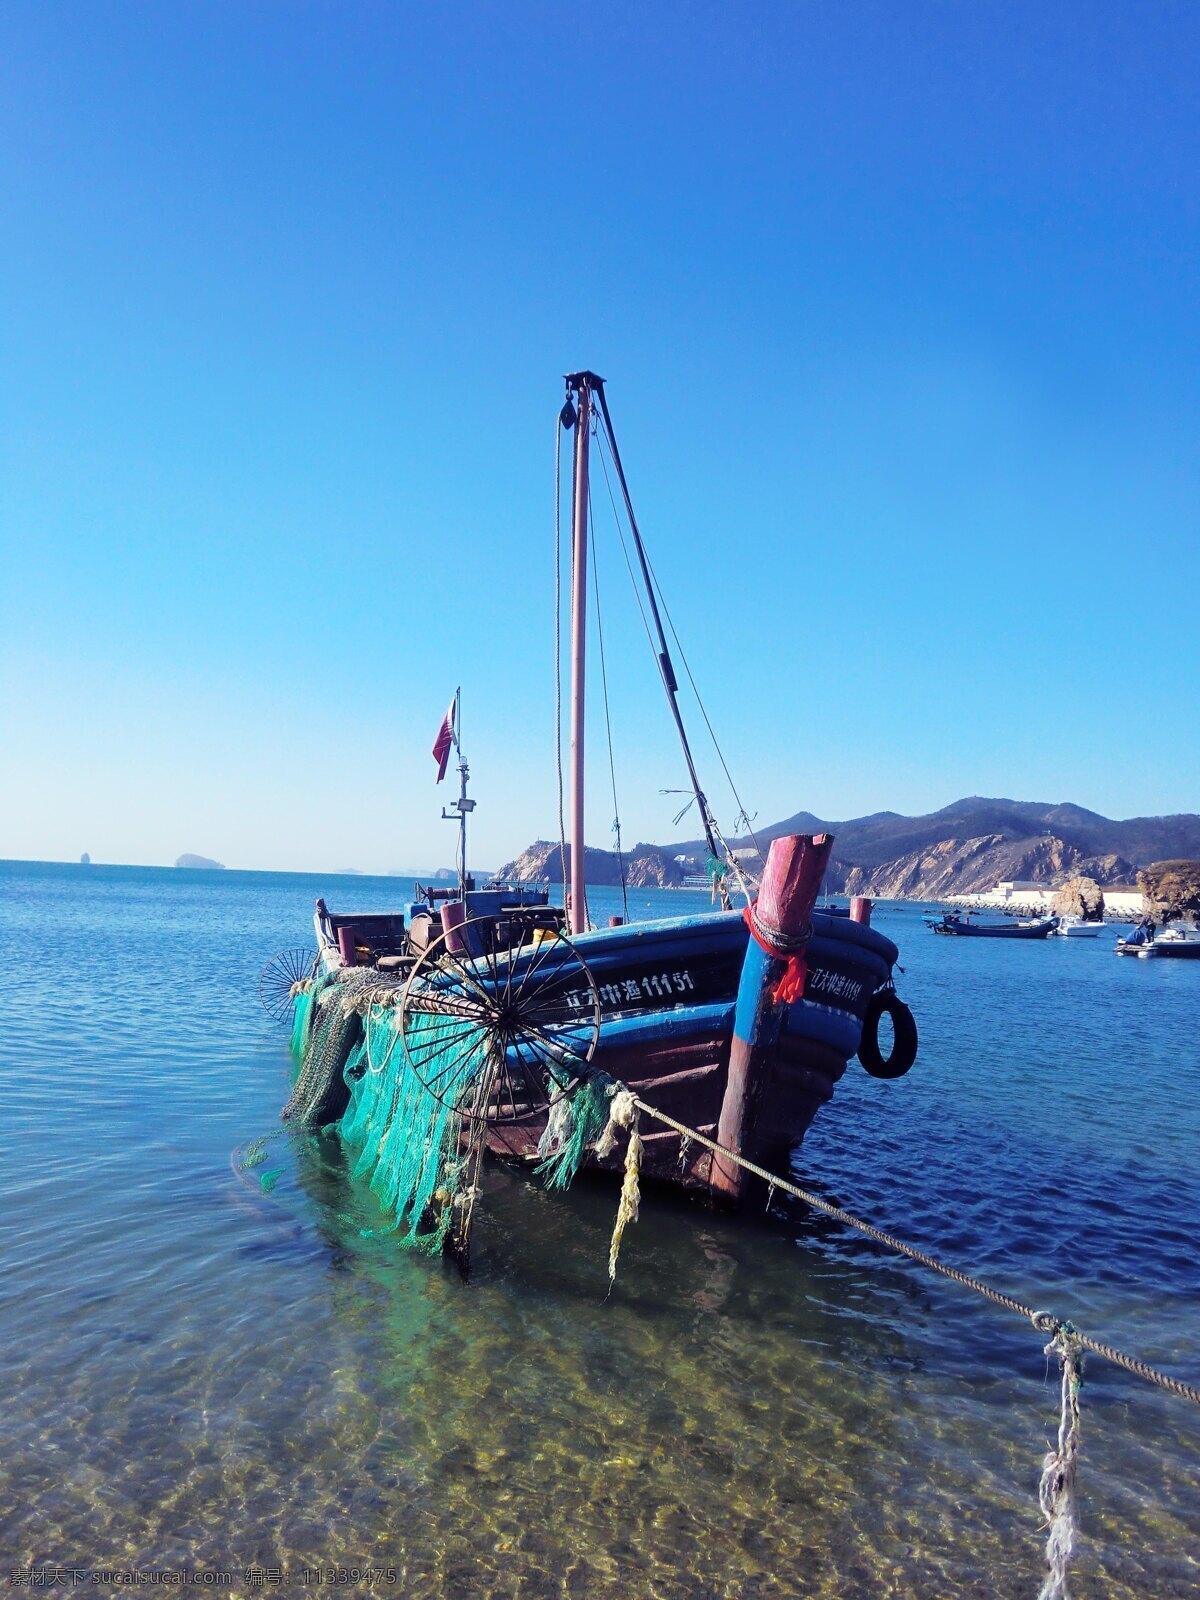 海边木渔船 渔船 船 渔夫打鱼 海浪 沙滩 出海 蓝天白云 出海打渔 岛屿 背景图片系列 自然景观 自然风景